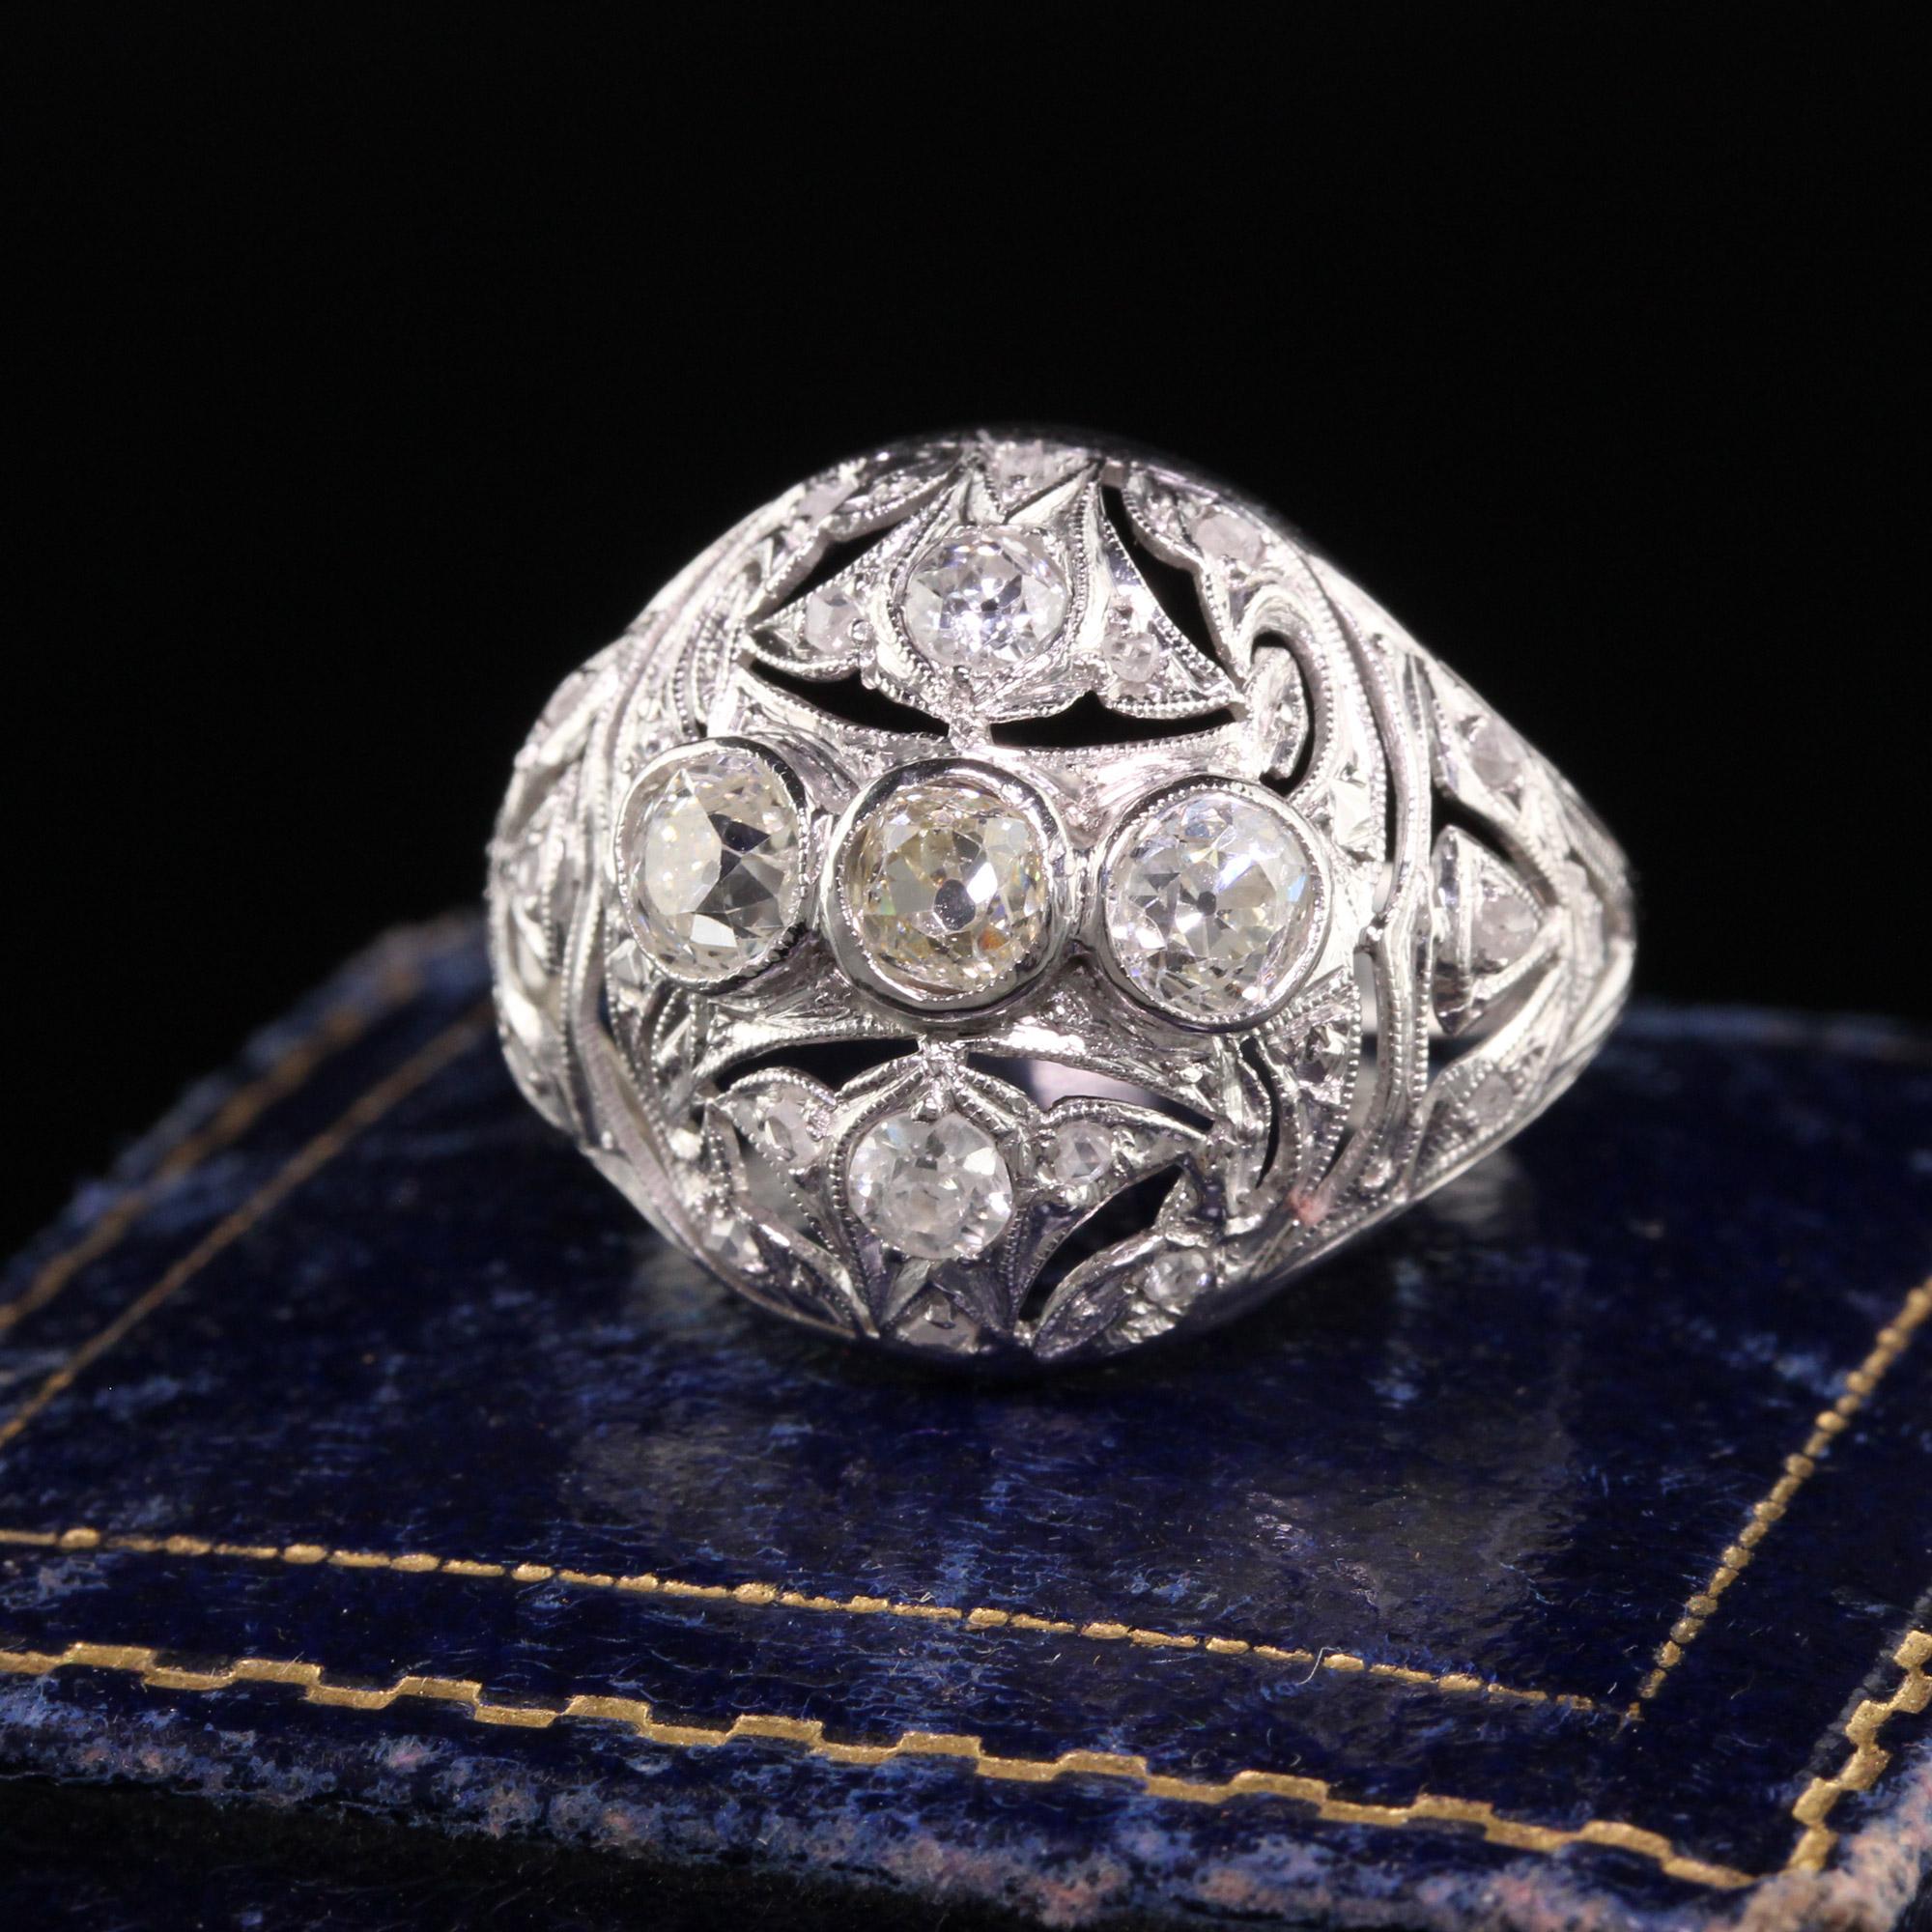 Schöne antike Art Deco Platinum Old Mine Diamond Filigree Cocktail Ring. Dieser schöne Ring ist aus Platin gefertigt. Der Ring ist mit Diamanten aus alten Minen, alten europäischen Diamanten und Diamanten im Rosenschliff besetzt. Es hat ein schönes